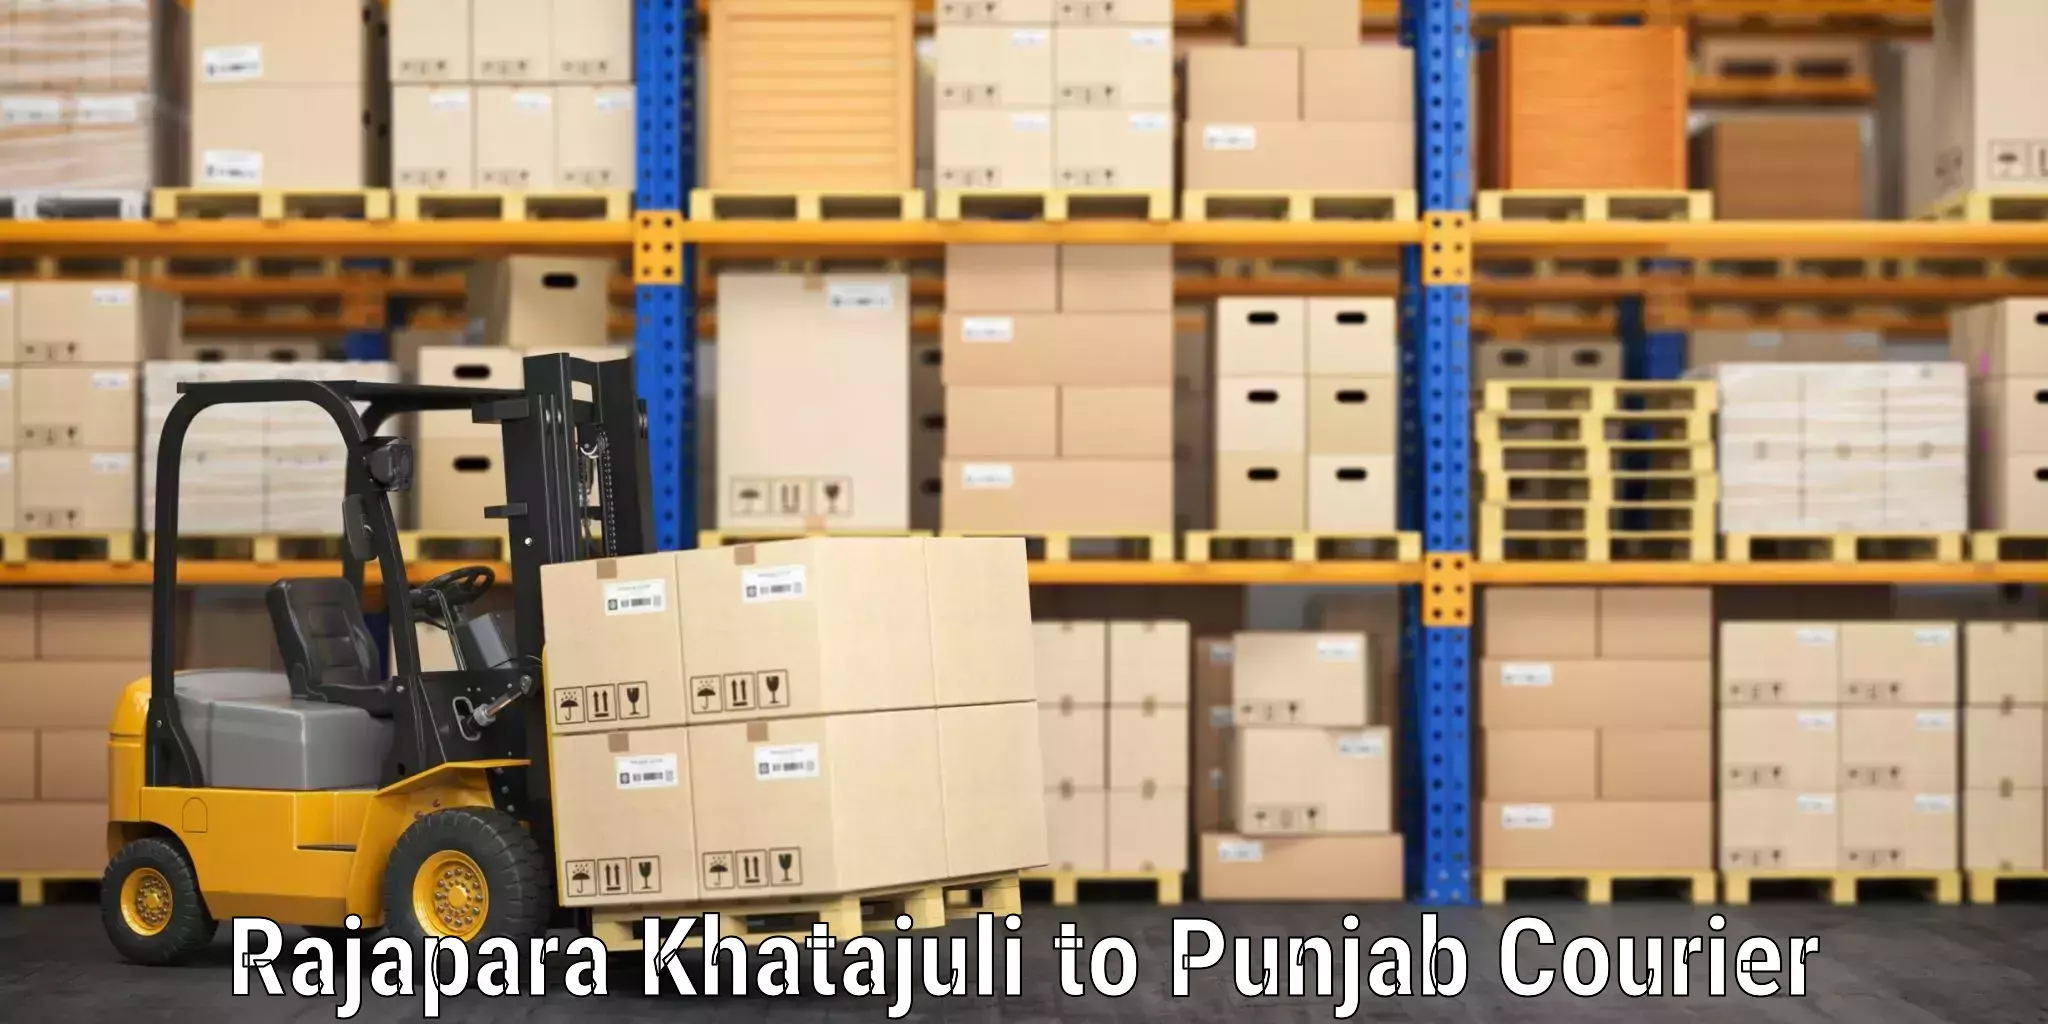 Automated luggage transport Rajapara Khatajuli to Central University of Punjab Bathinda